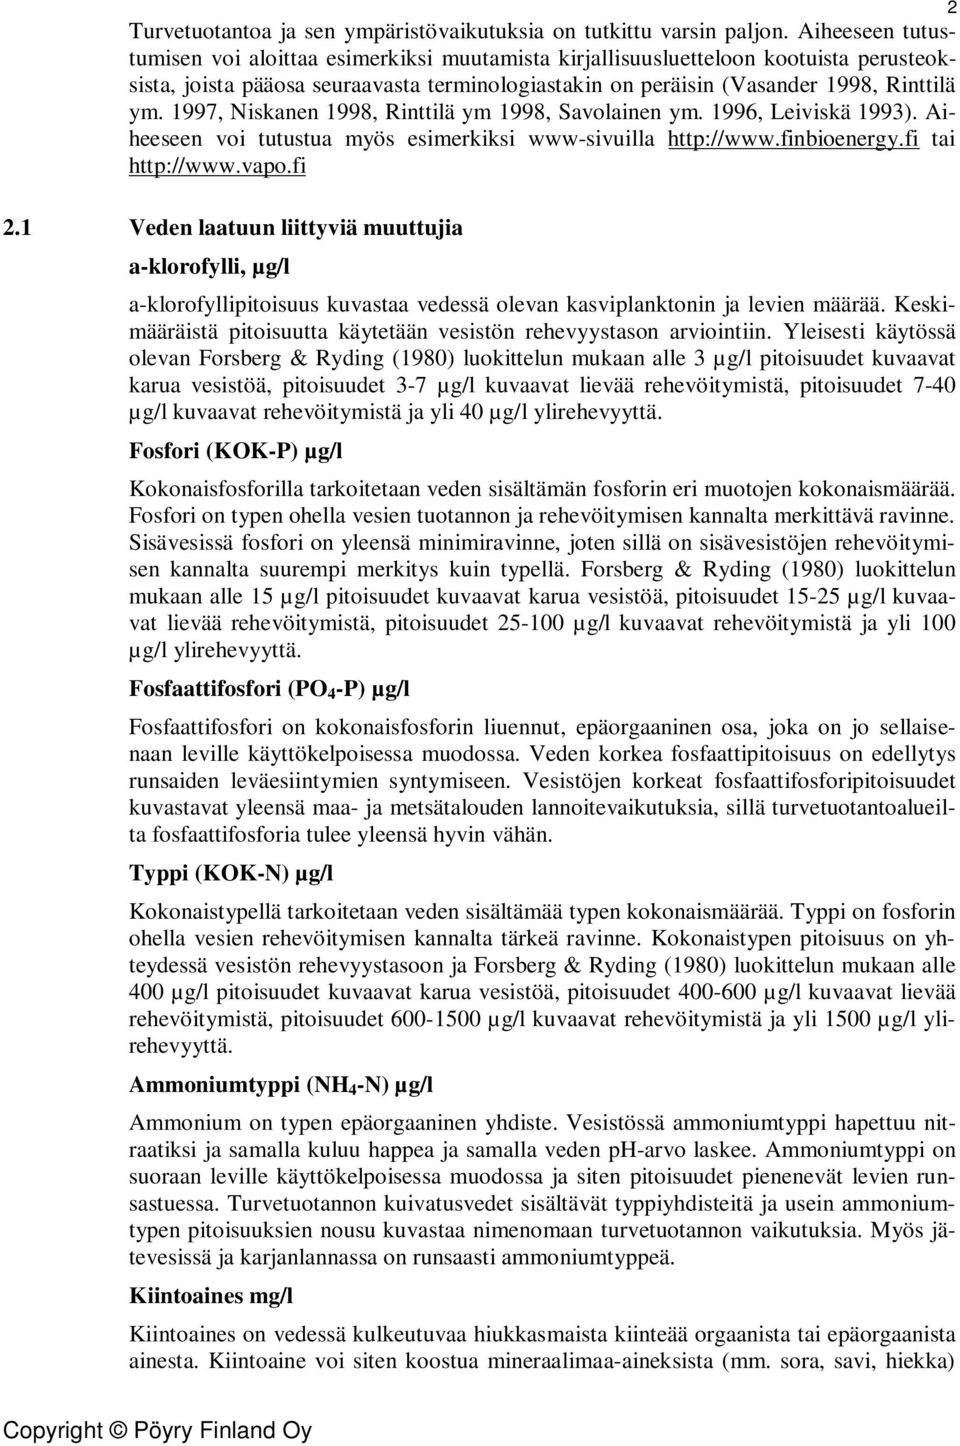 1997, Niskanen 1998, Rinttilä ym 1998, Savolainen ym. 1996, Leiviskä 1993). Aiheeseen voi tutustua myös esimerkiksi www-sivuilla http://www.finbioenergy.fi tai http://www.vapo.fi 2 2.